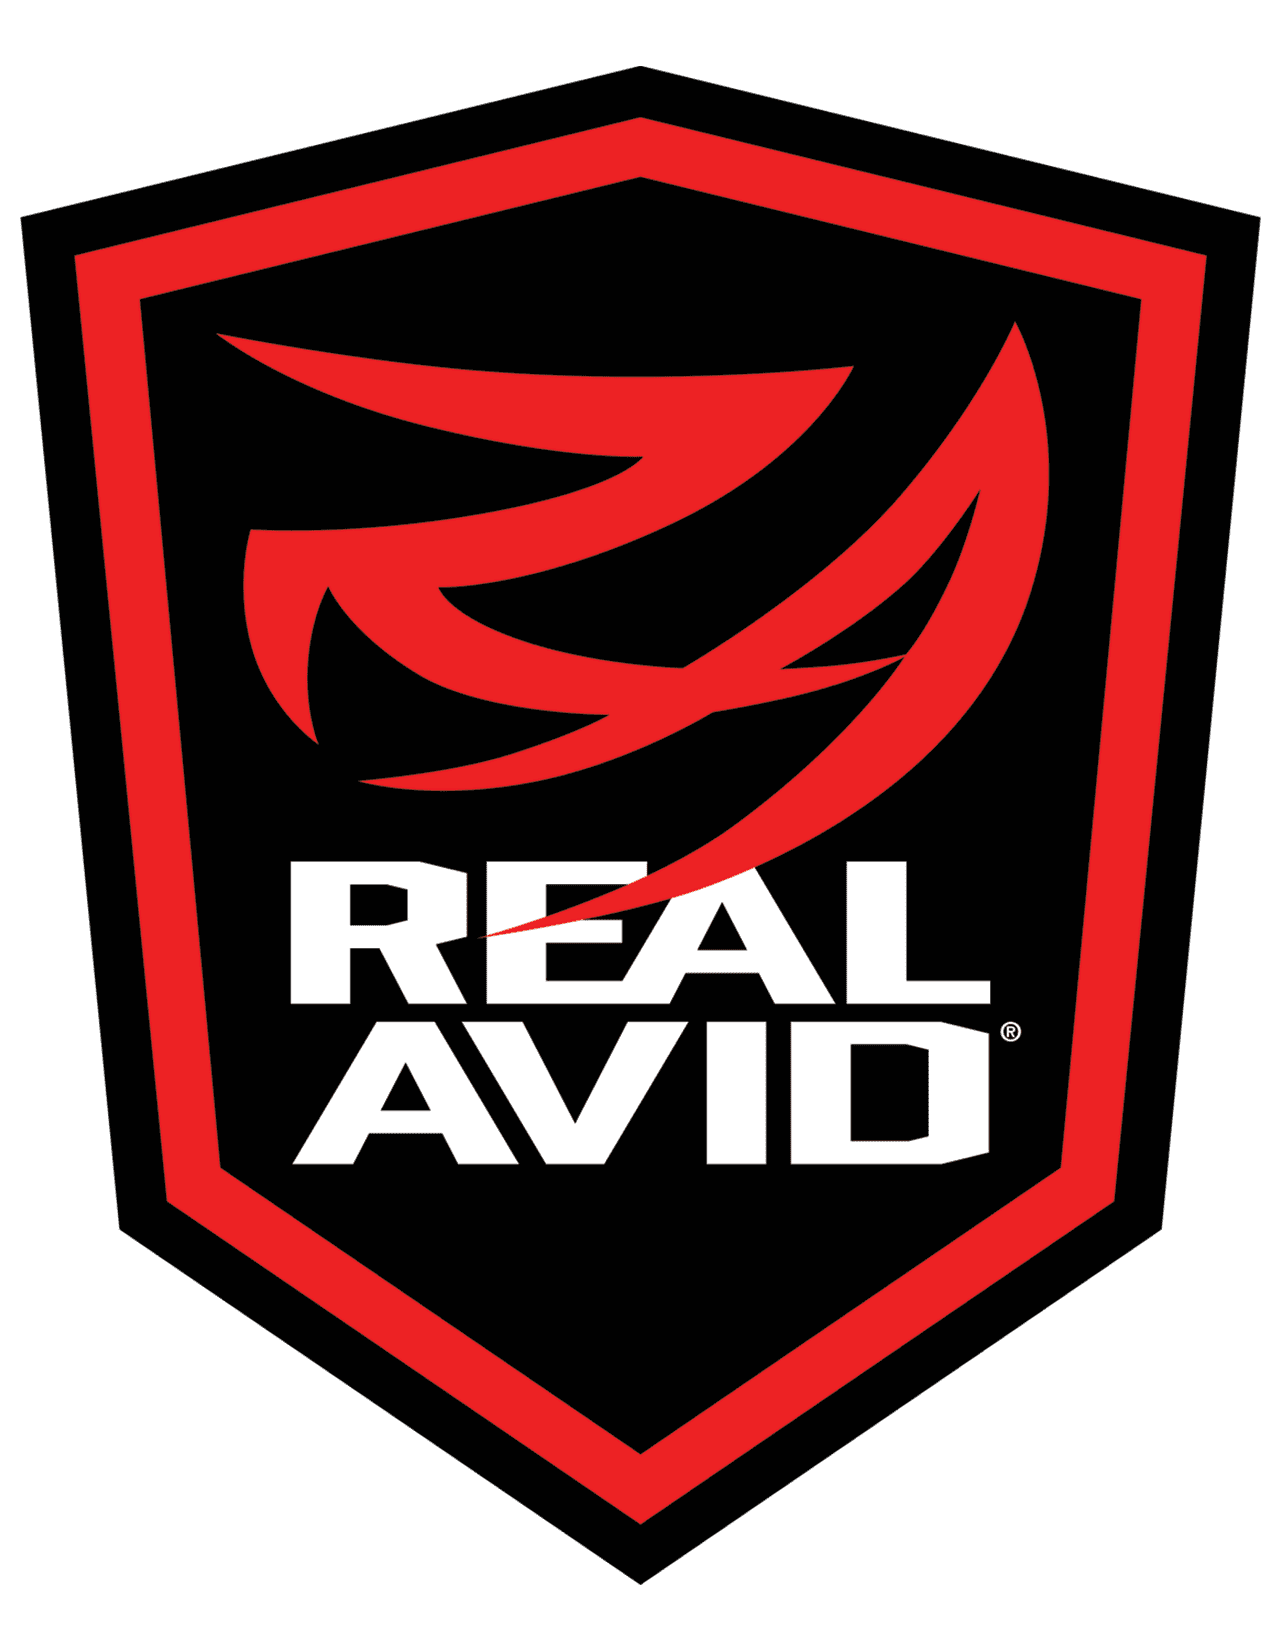 Real Avid Logo High Resolution